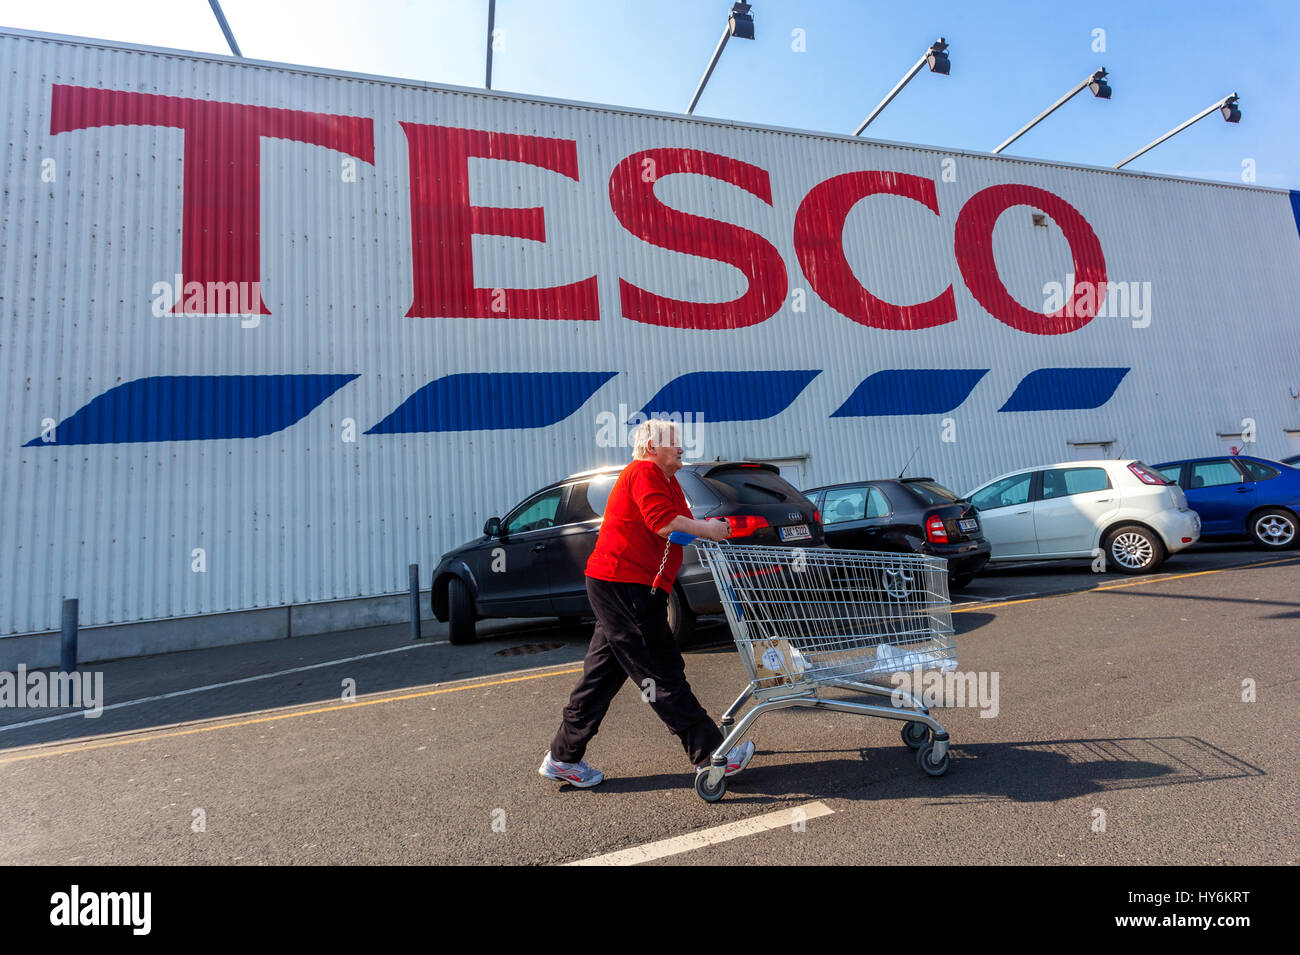 Enseigne de supermarché de magasin Tesco, logo, femme cliente âgée avec un chariot Tesco République Tchèque Banque D'Images